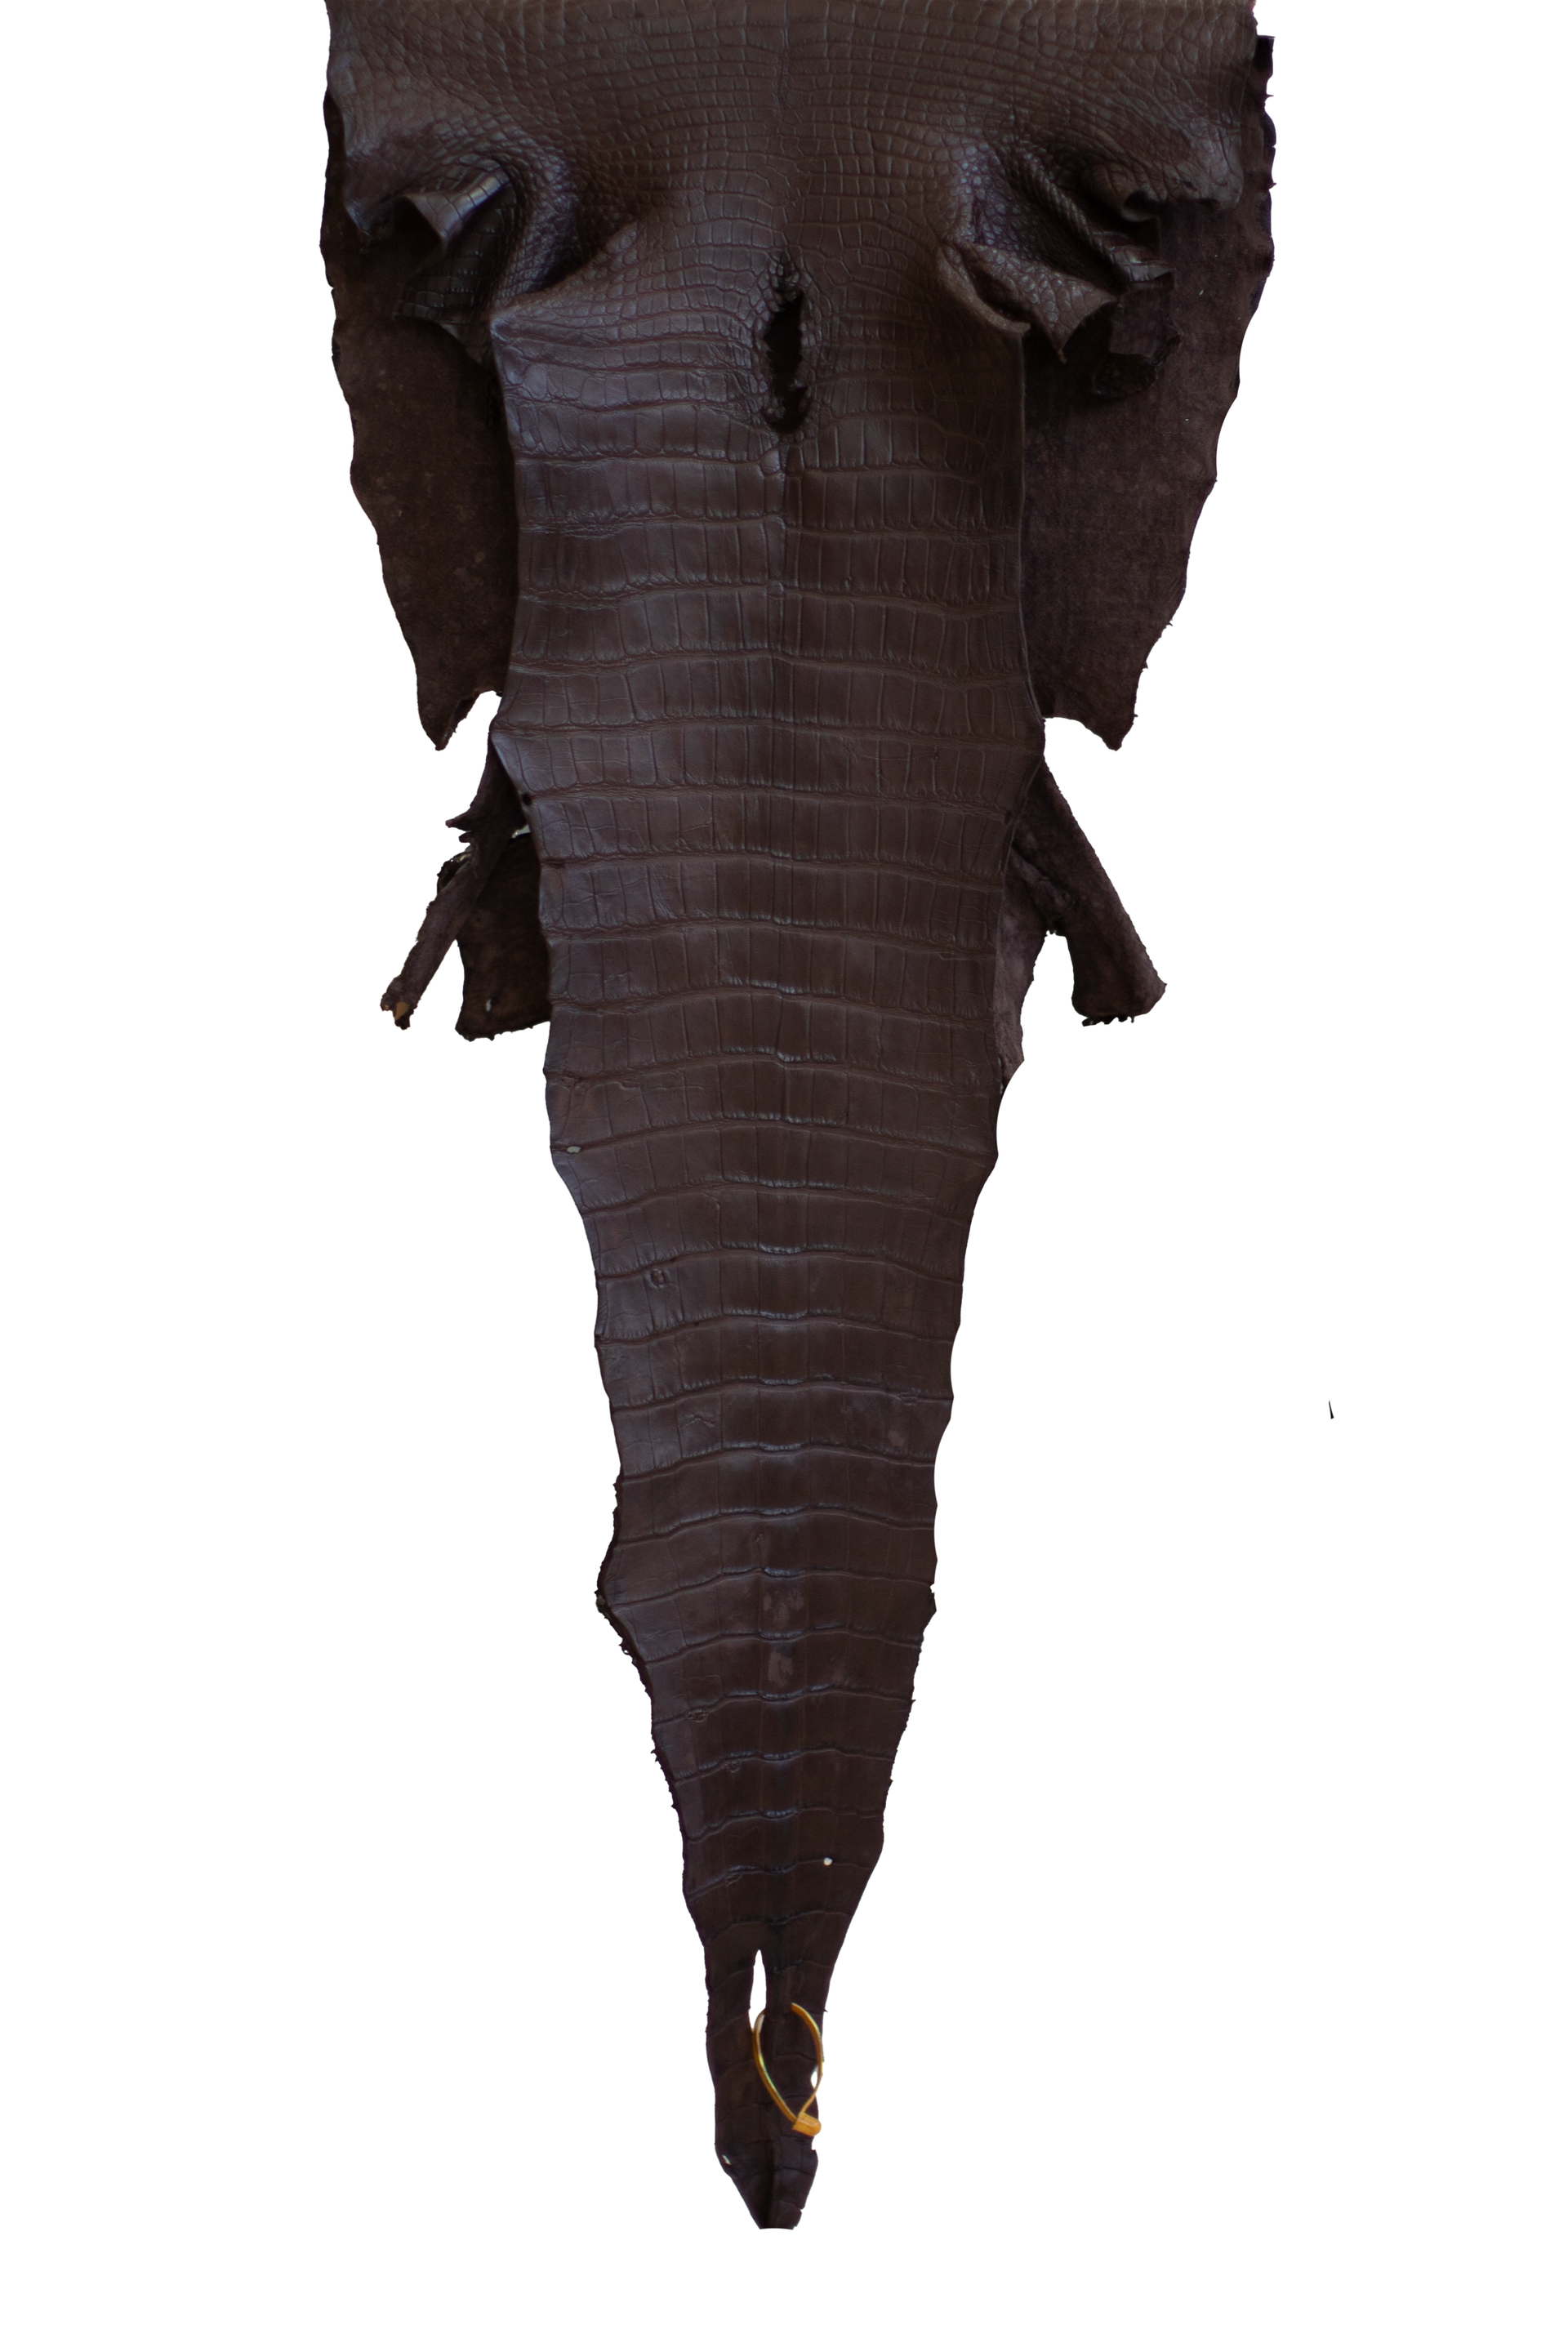 53 cm Grade 4/5 Ideal Brown Matte Wild American Alligator Leather - Tag: LA22-0017875